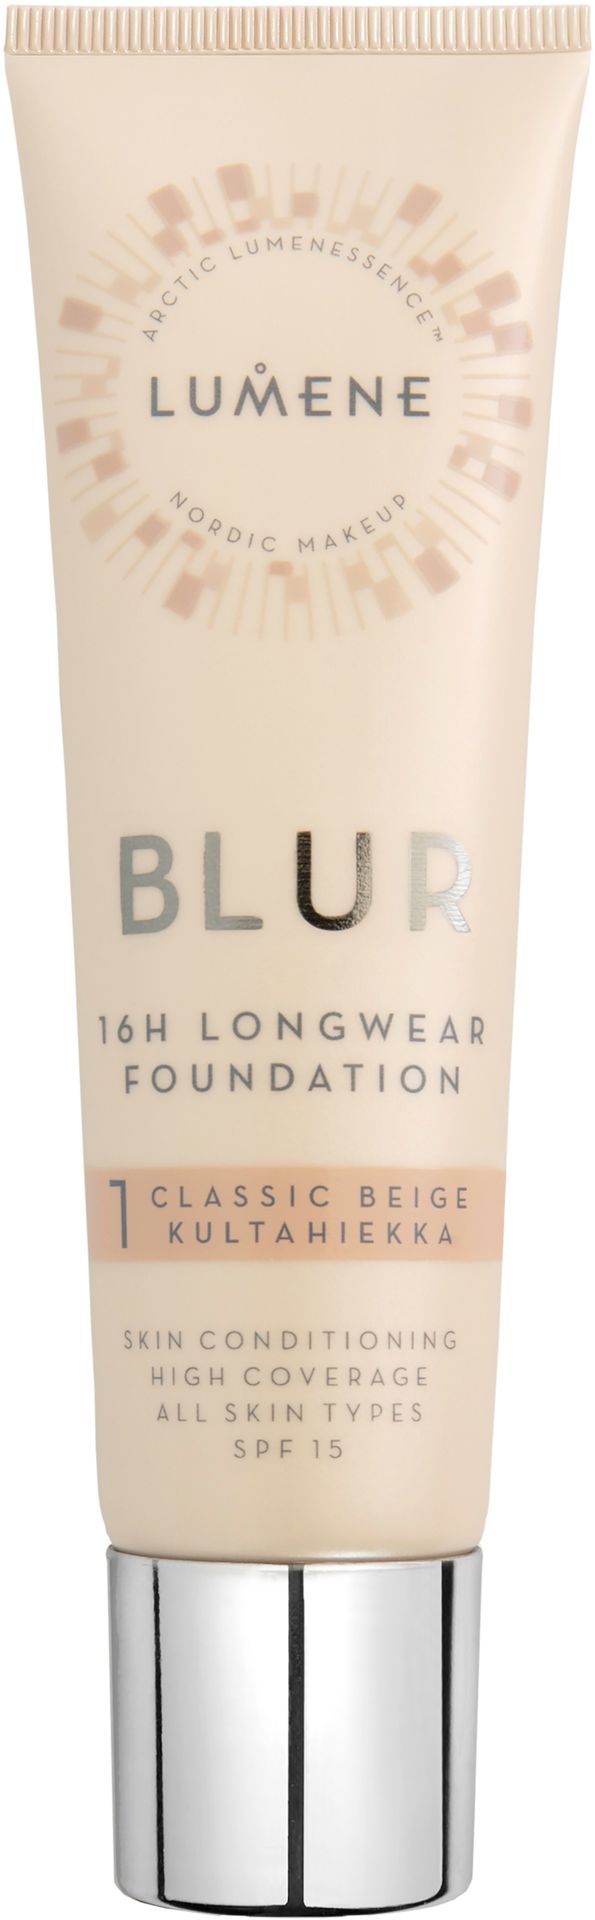 Lumene Blur Foundation podkład wygładzający 1 Classic Beige 30ml